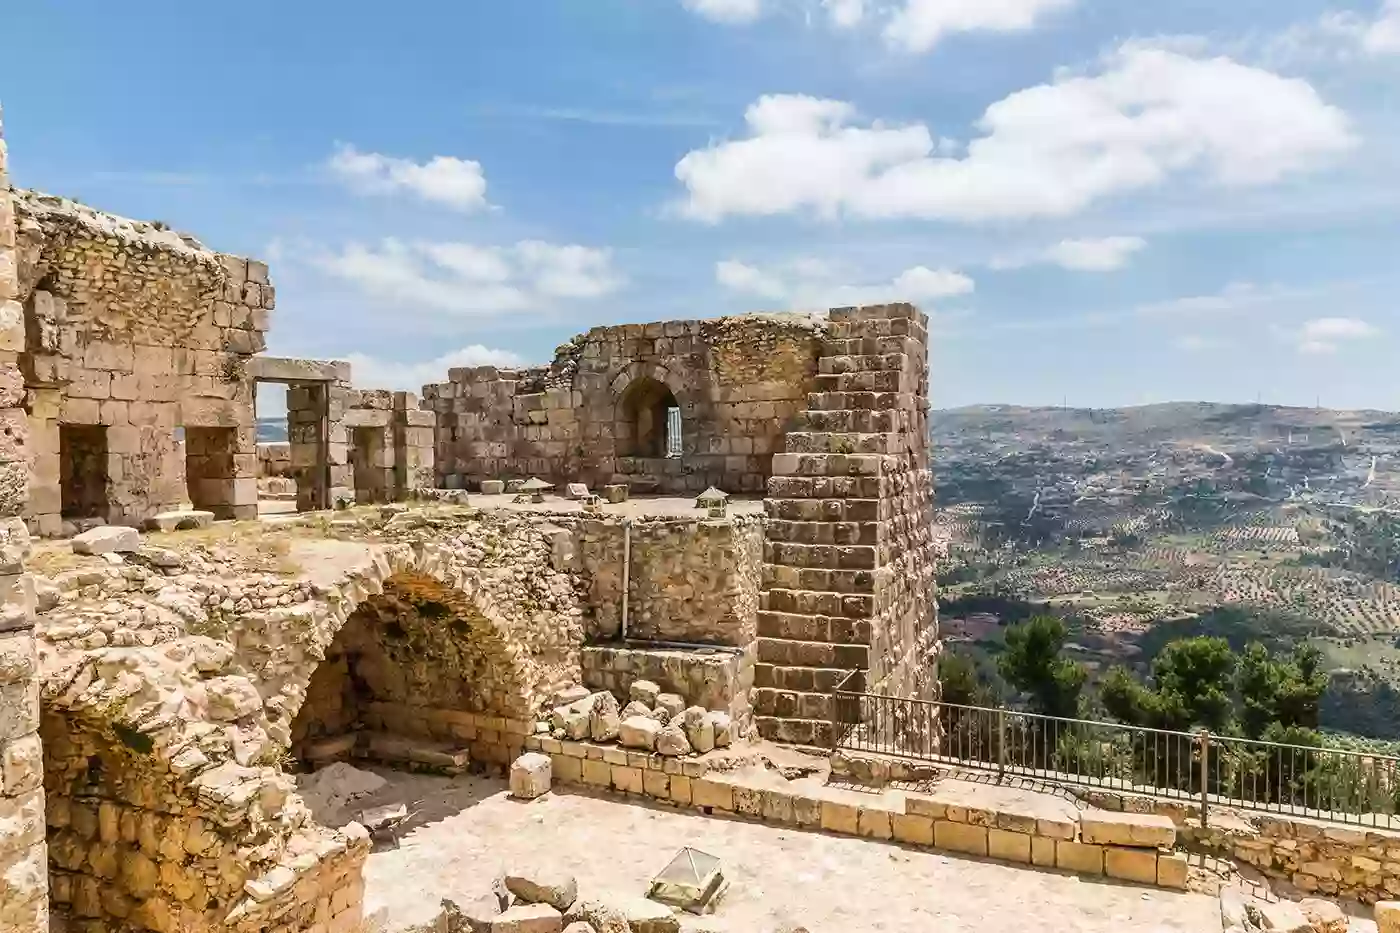 jordans-cultural-heritage-sites